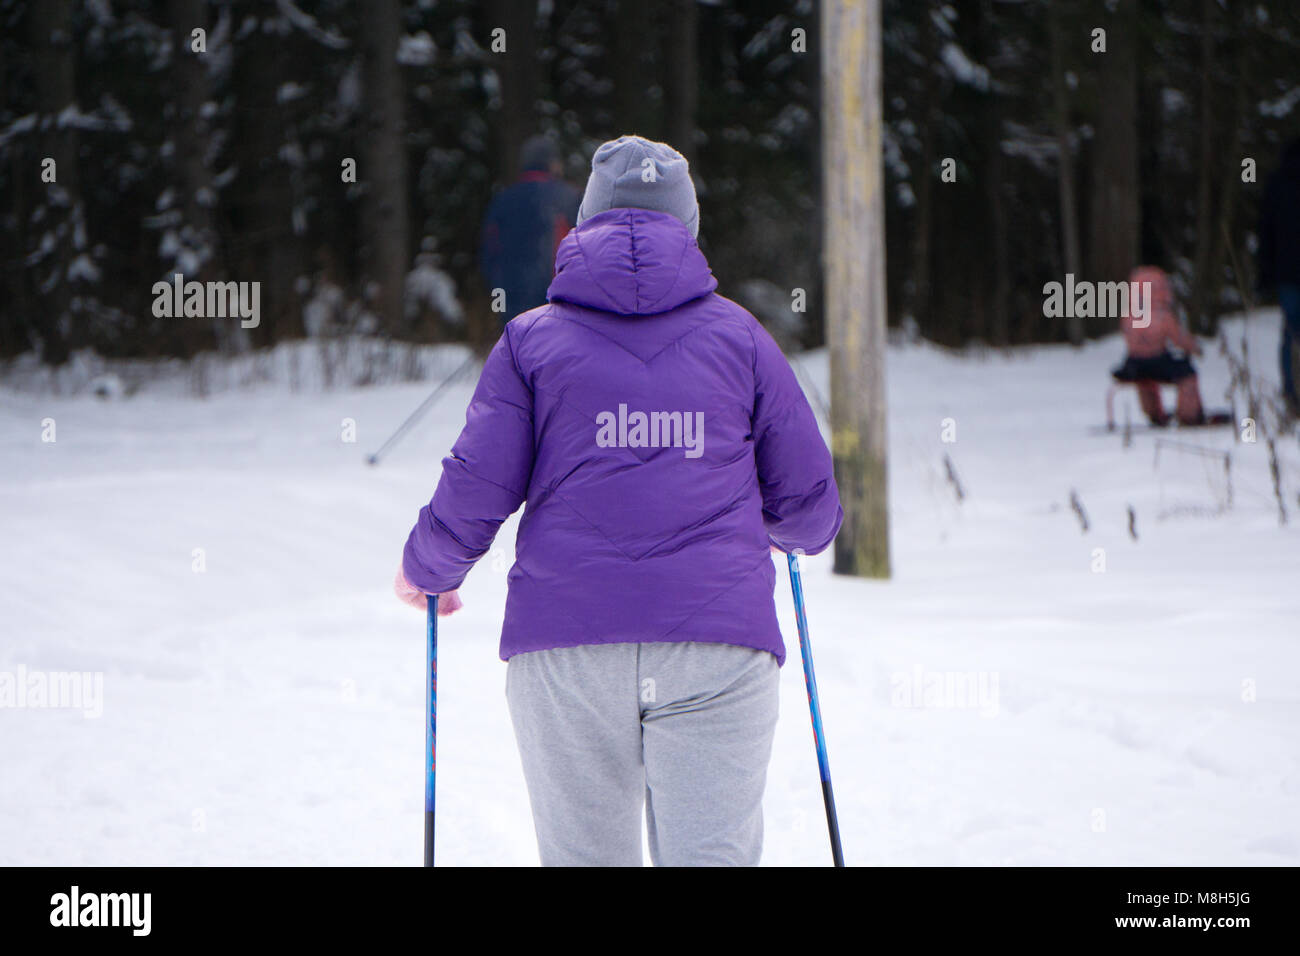 Ragazza sci durante la nevicata meteo località sciistica sciatore indossa  una veste blu cappotto invernale, viola hot pants, pantaloncini blu e guanti  bianchi. La struttura copre le sno Foto stock - Alamy